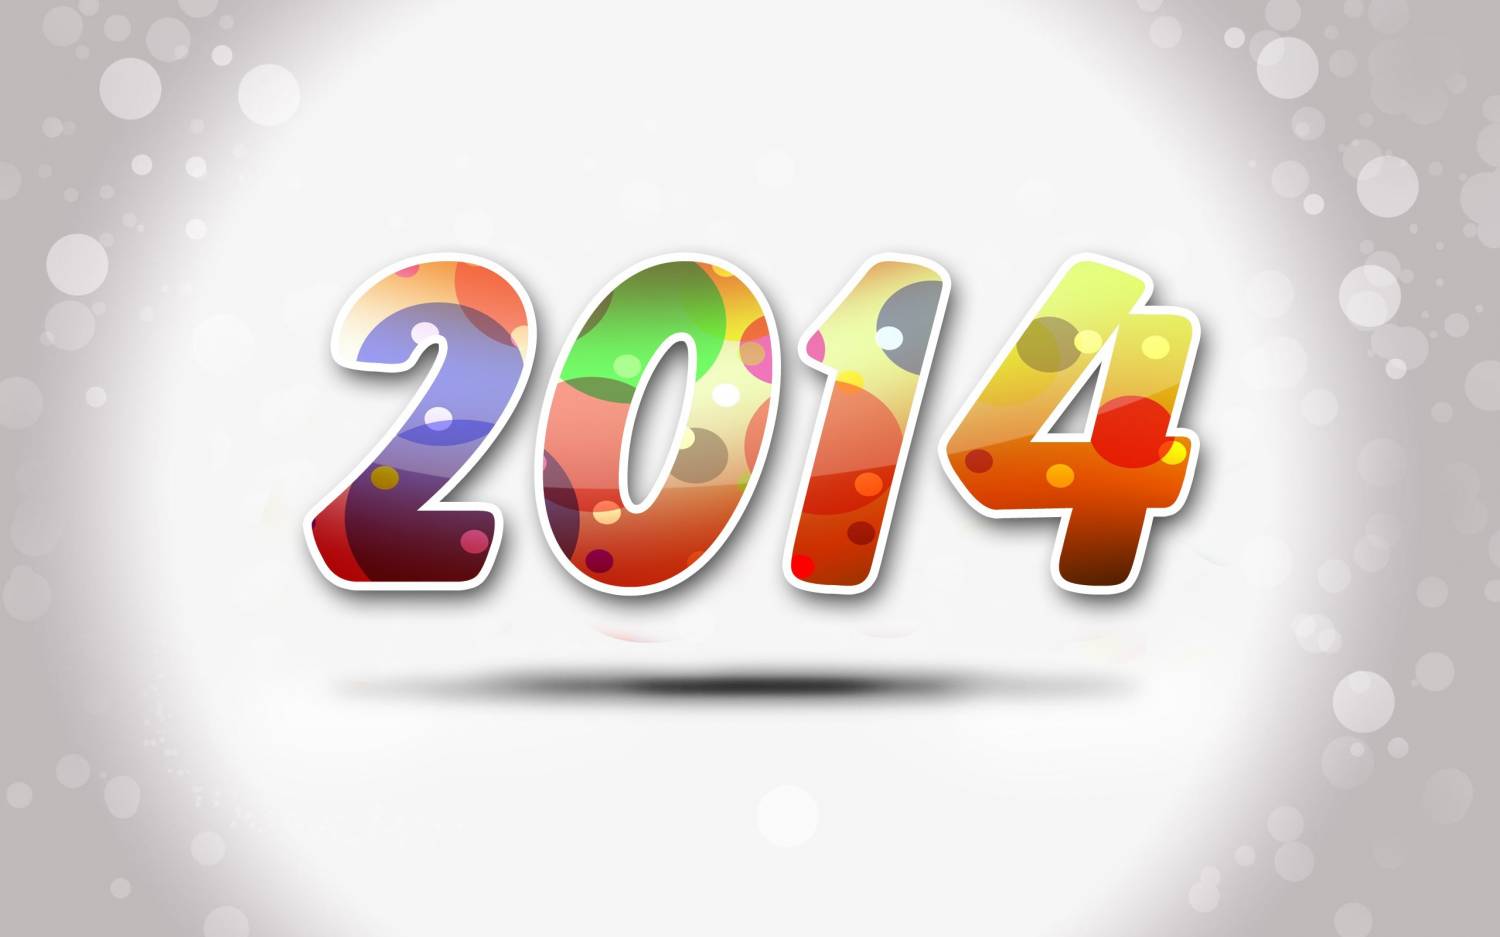 Ինչպիսի՞ն կլինի 2014-ը՝ ըստ ձեր ծնված տարվա